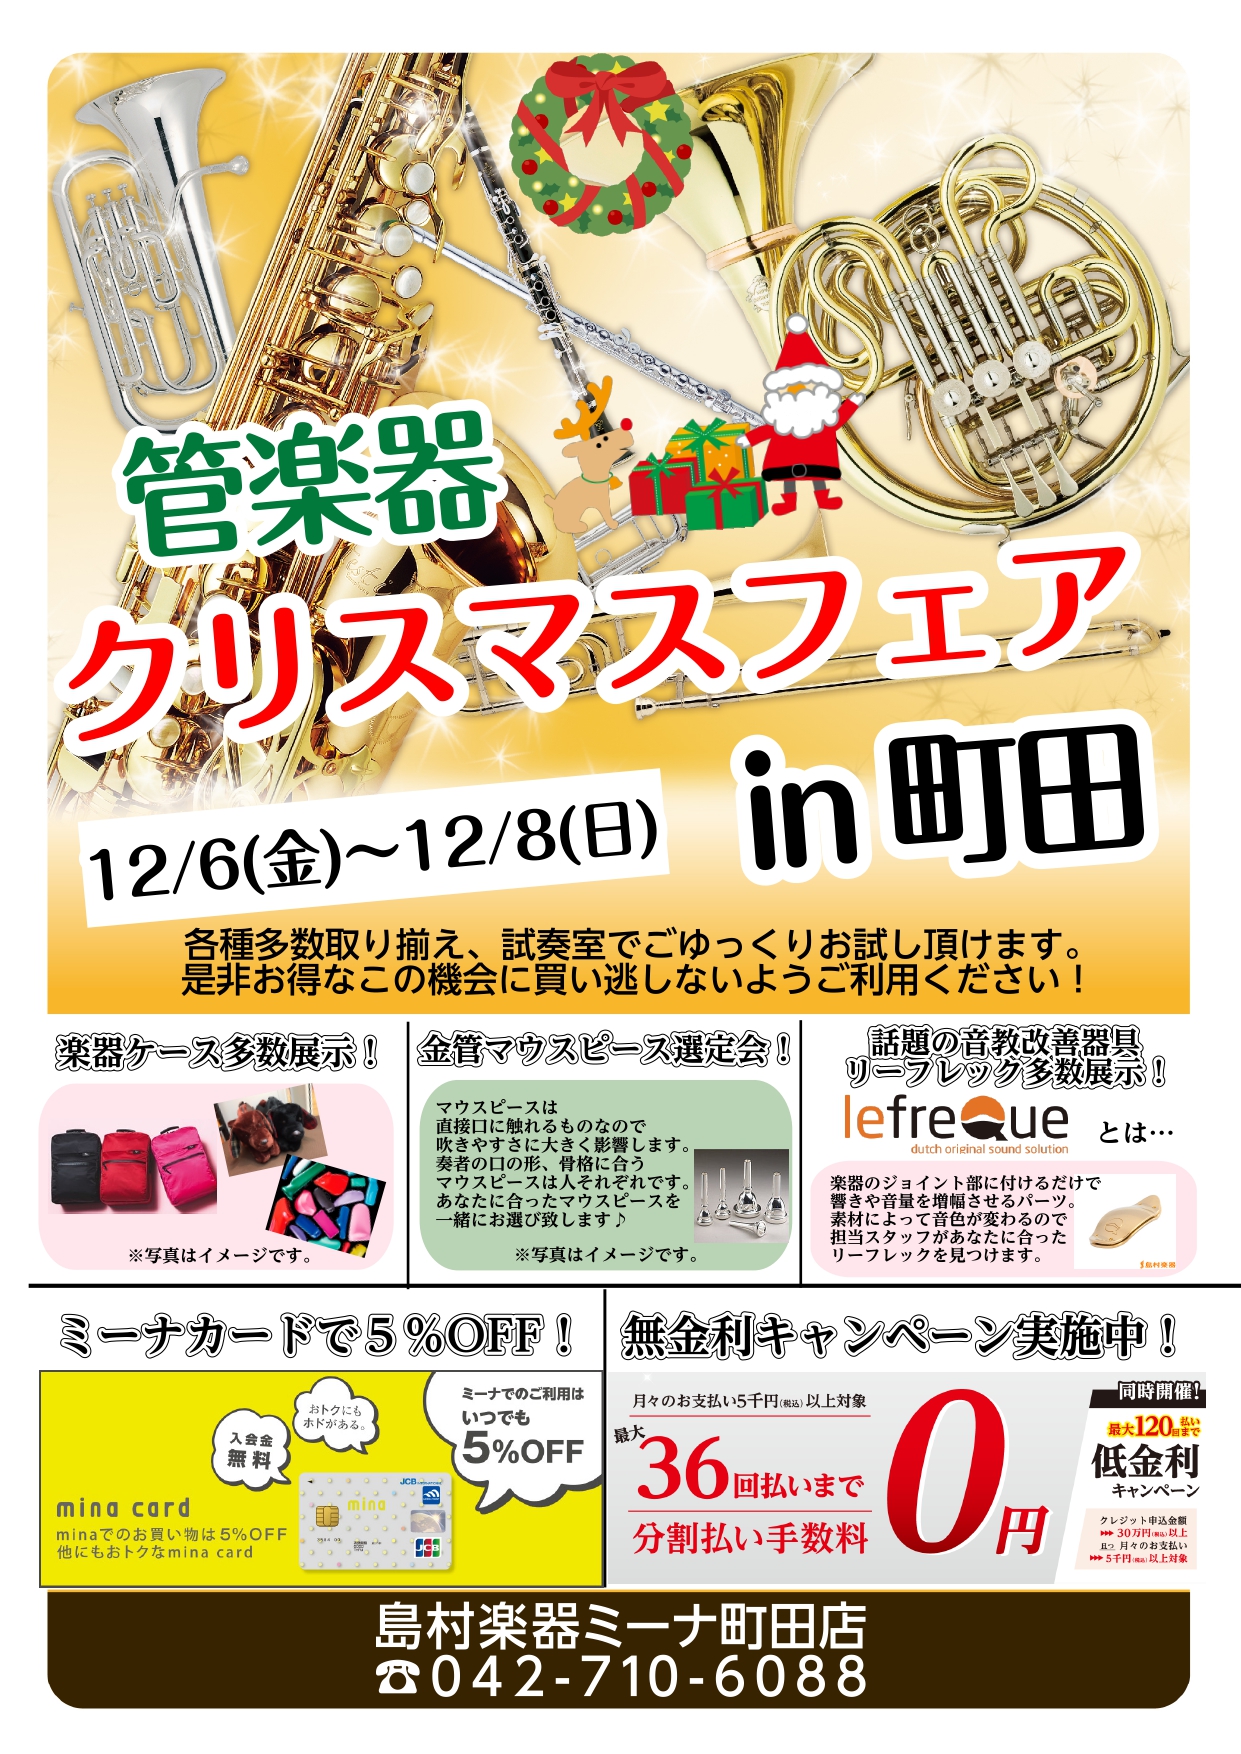 *クリスマス管楽器フェア！ 12月6日(金)から12月8日(日)までの3日間限定のクリスマス管楽器フェアを開催します！ 様々な管楽器を並べてのフェアとなります。この機会に是非ミーナ町田店をご利用ください！ |*期間| |[!2019年12月6日(金)～12月8日(日)まで!]| *嬉しいお知らせ！] […]